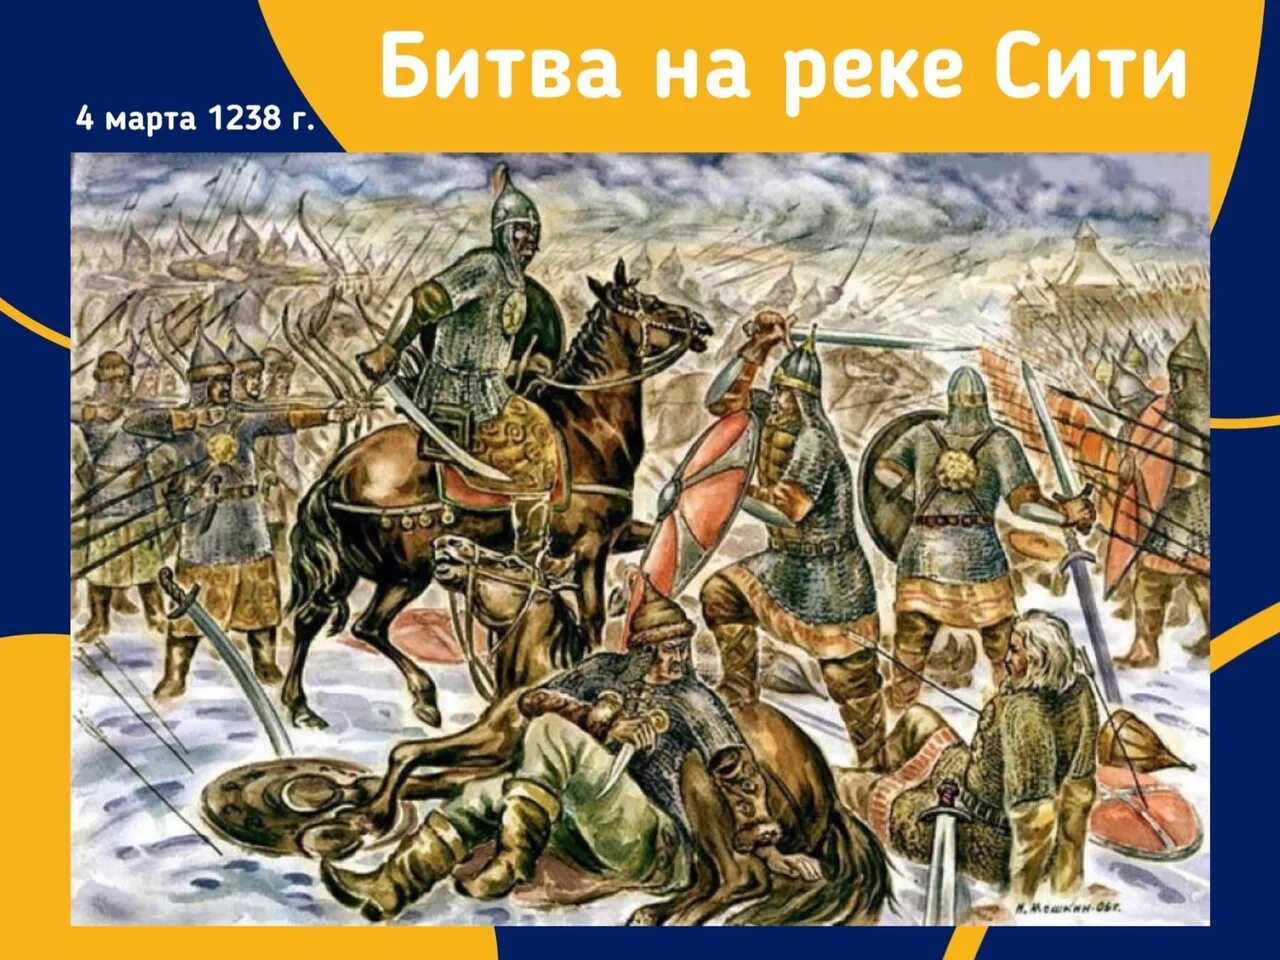 1238 Год битва на реке Сити. 1572-Битва у села молоди. Набеги татар на москву